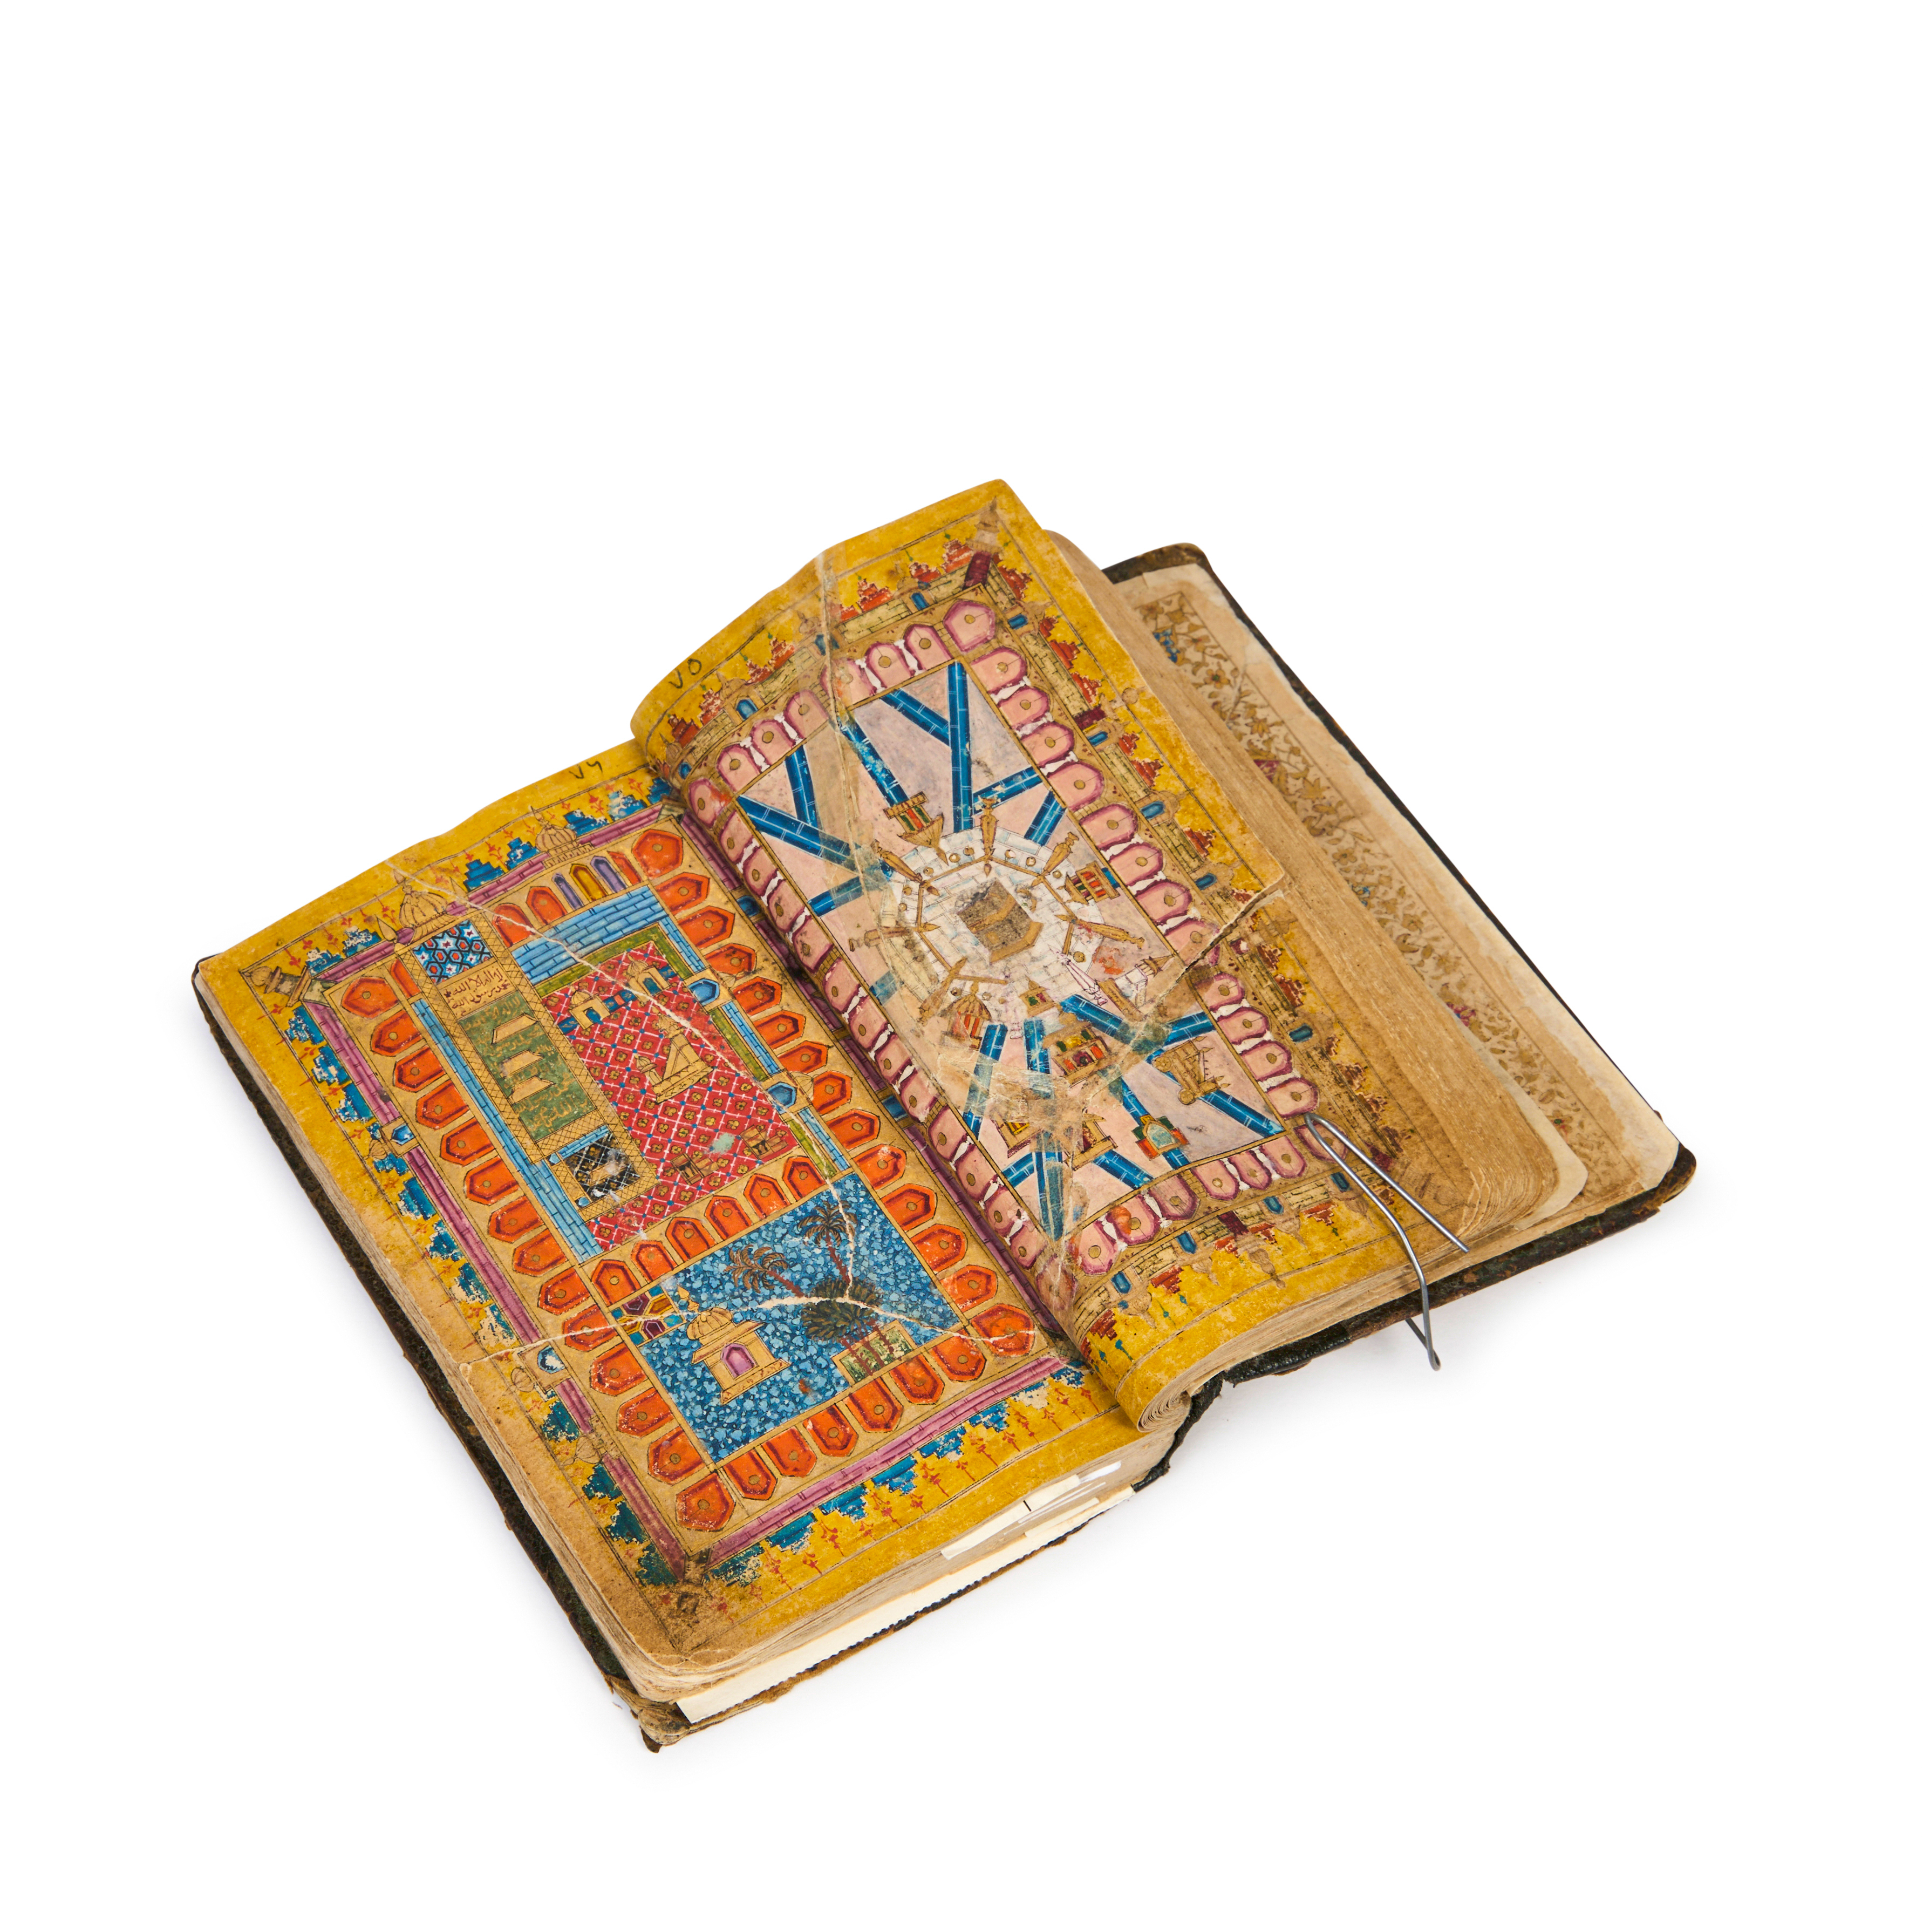 A DALA'IL AL-KHAYRAT (PRAYER BOOK), SIGNED SHEIKH AL-JAZOULI ,16TH CENTURY